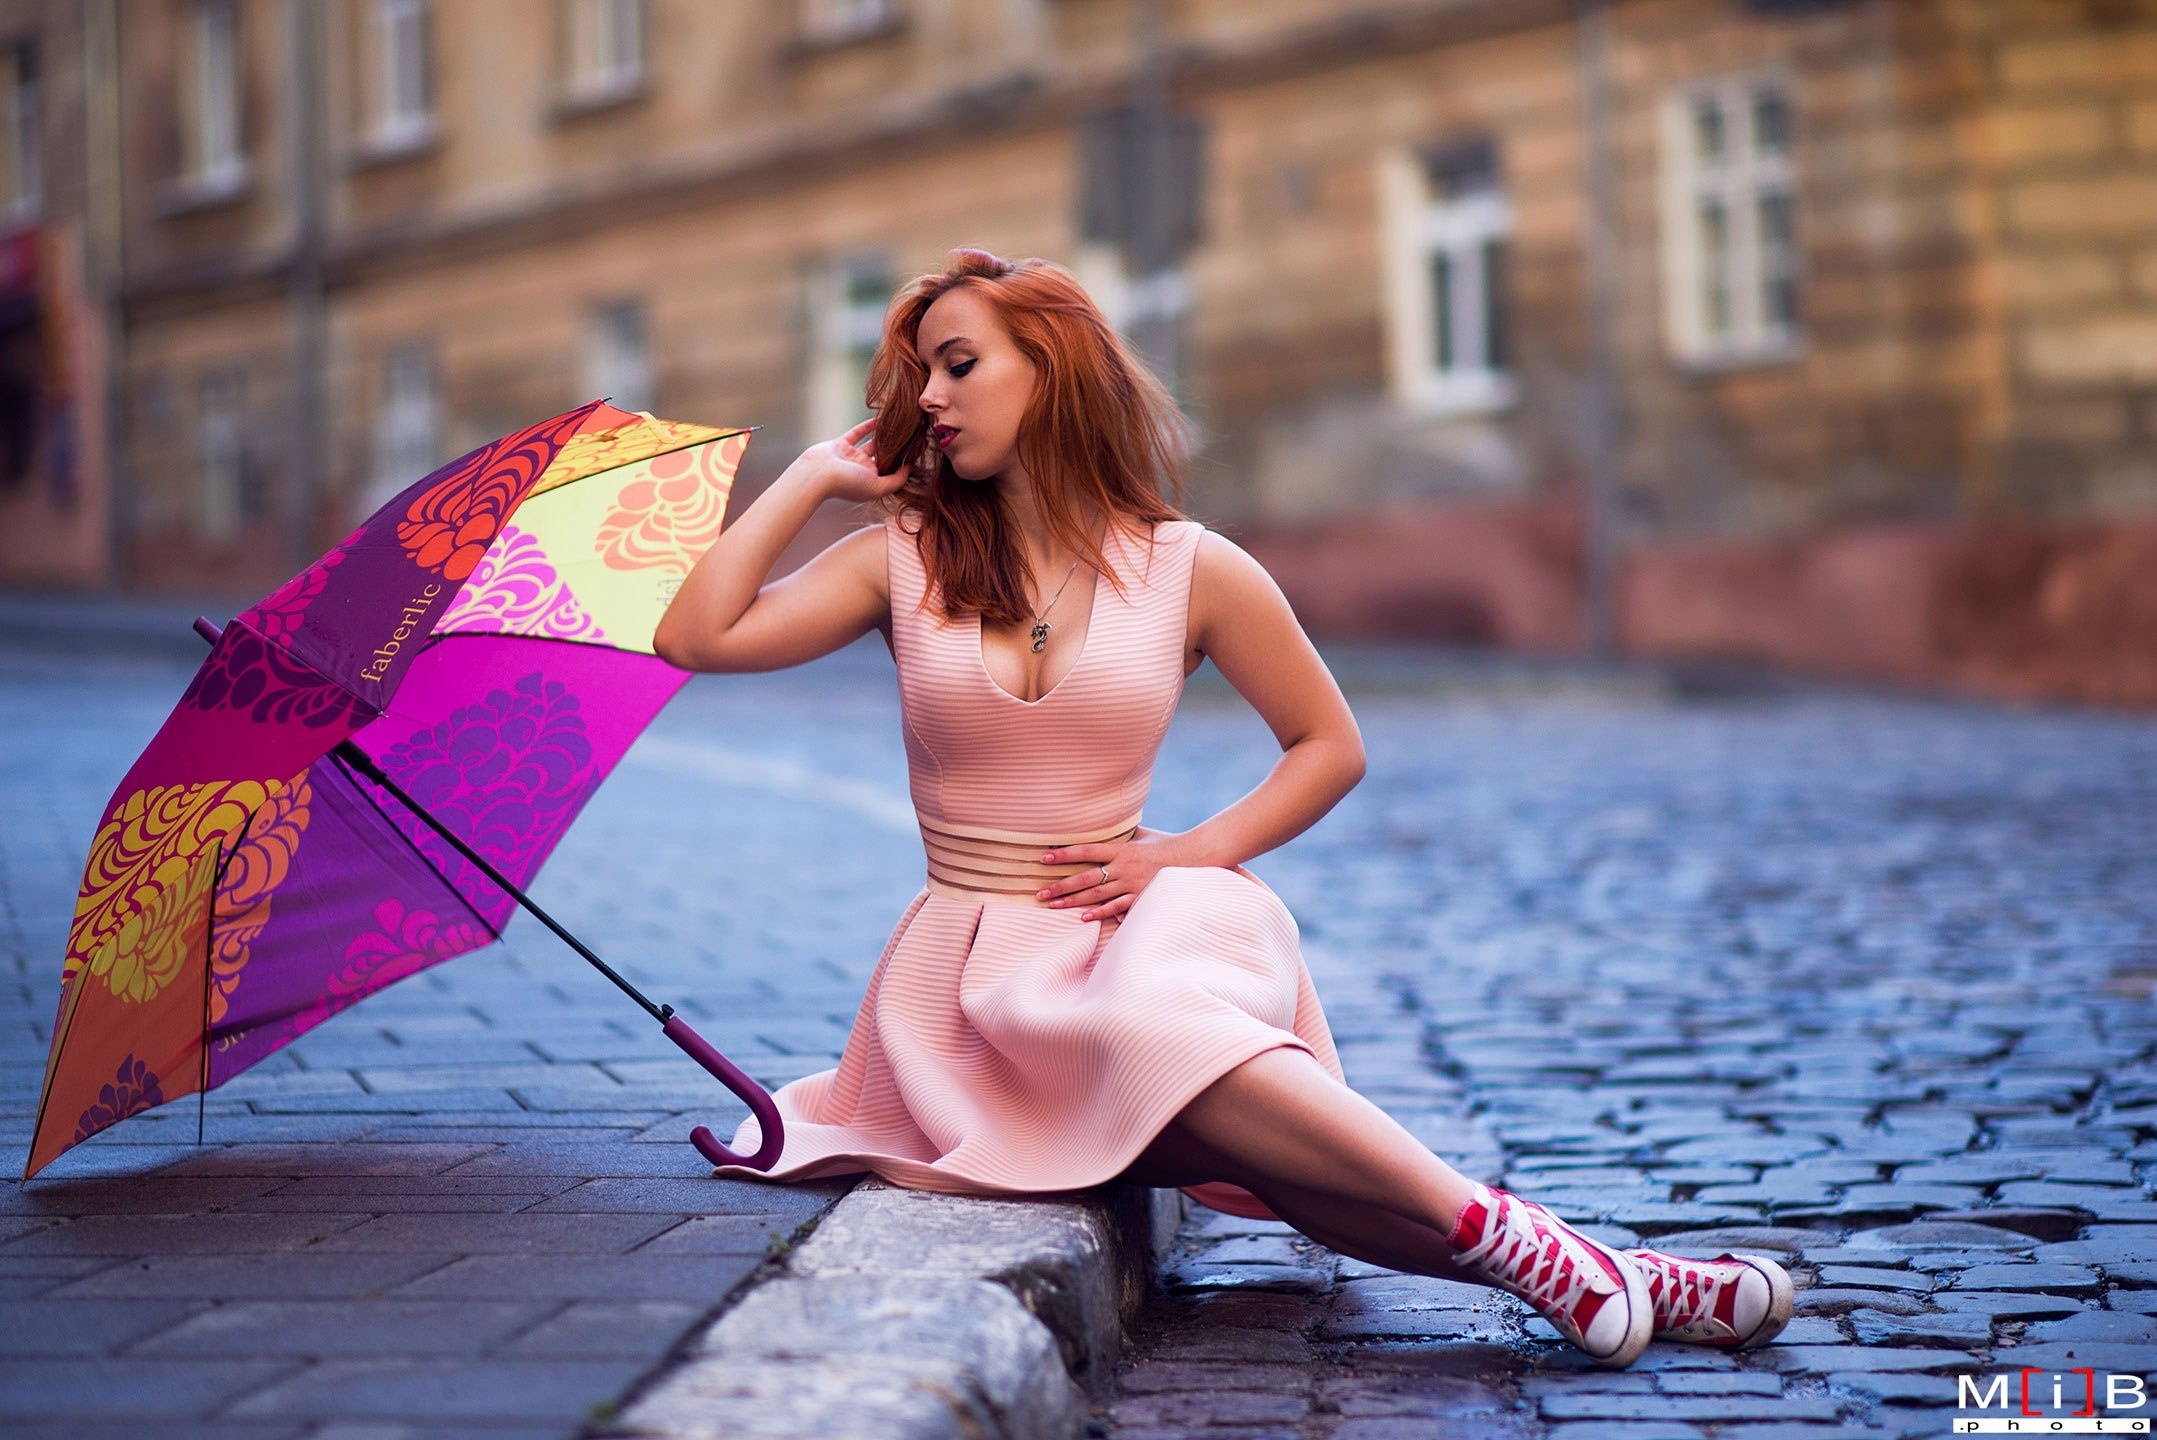 Обои улица брусчатка зонт девушка Ліля Журавська Lil Vos рыжая бестия на рабочий стол